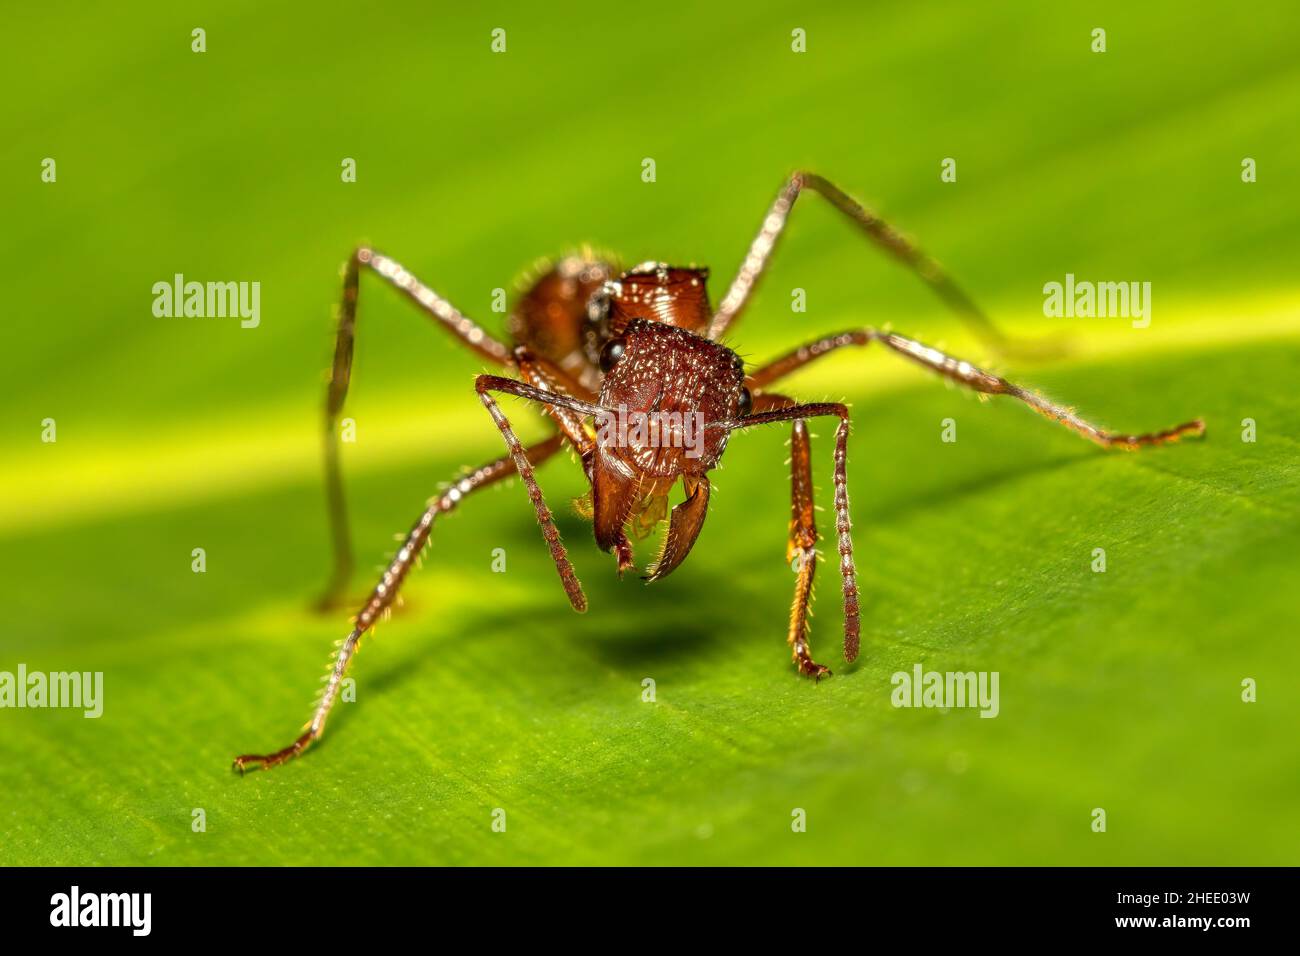 Paraponera clavata zeigt seine Kiefer. Große Ameisenarten, allgemein bekannt als die Kugelamantel, benannt nach ihrem extrem schmerzhaften Stich. Tortuguero Cerro, Kosten Stockfoto